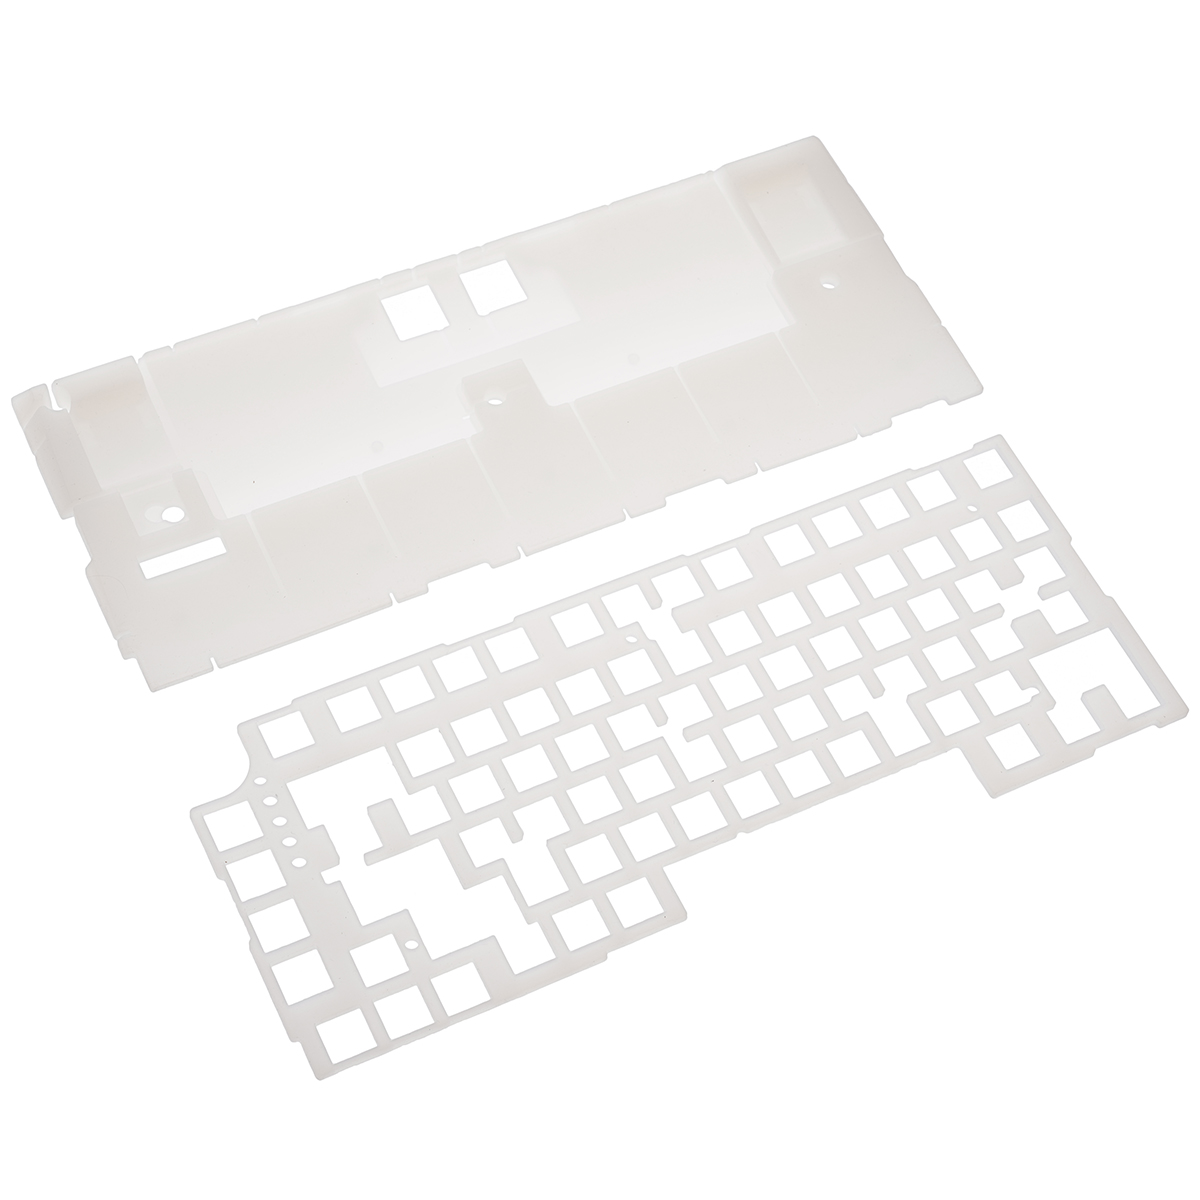 Find FEKER IK75 2Pcs Silicone Pads Set Dampers Sound Soft Shaft Pad Sheet Mechanical Keyboard DIY Kit for IK75 V1 V3 Pro QMK for Sale on Gipsybee.com with cryptocurrencies